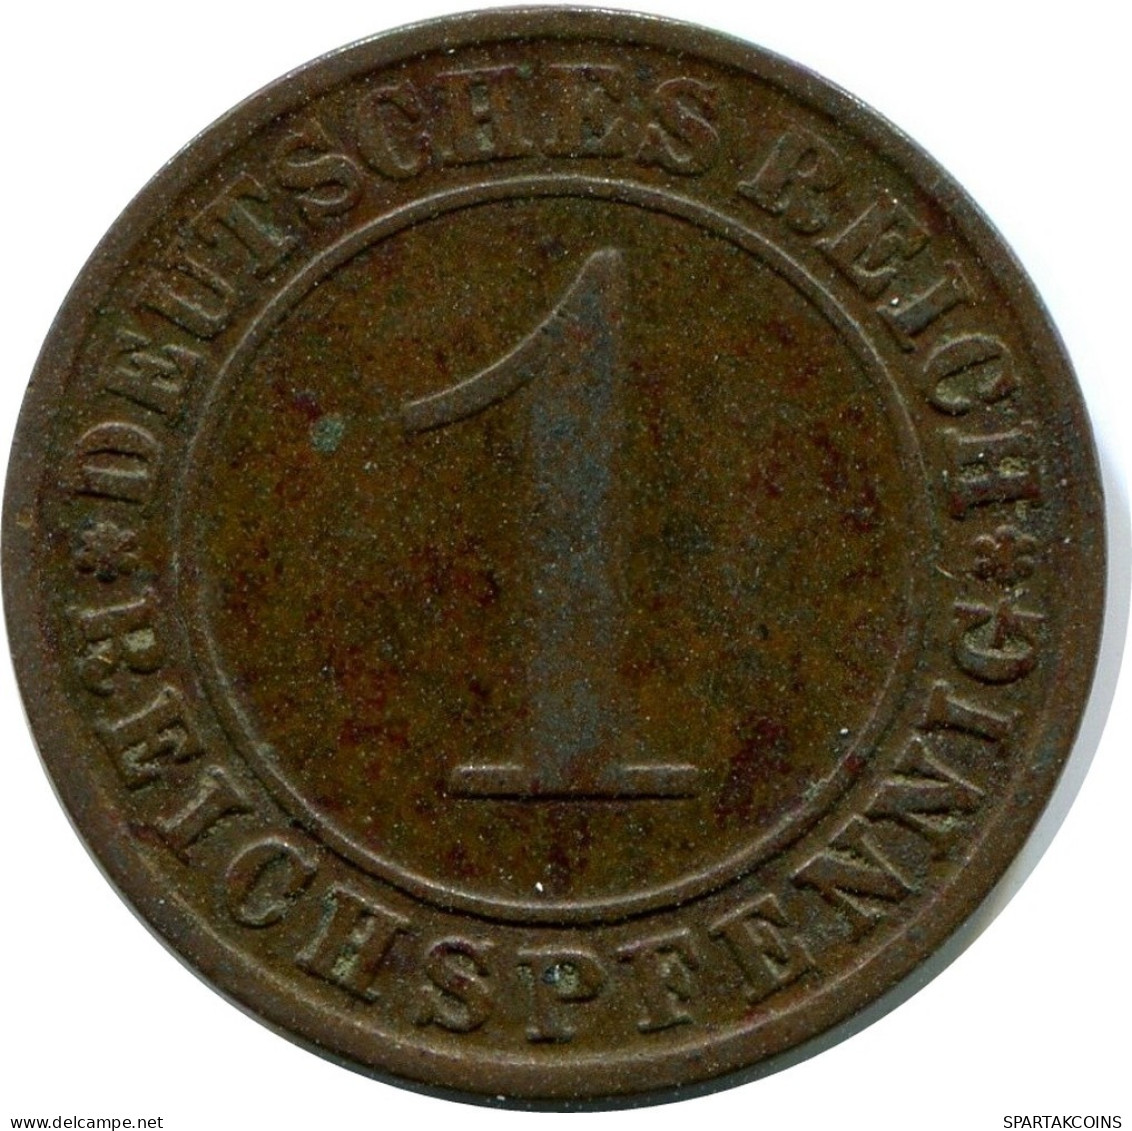 1 REICHSPFENNIG 1929 A ALLEMAGNE Pièce GERMANY #DA776.F.A - 1 Rentenpfennig & 1 Reichspfennig